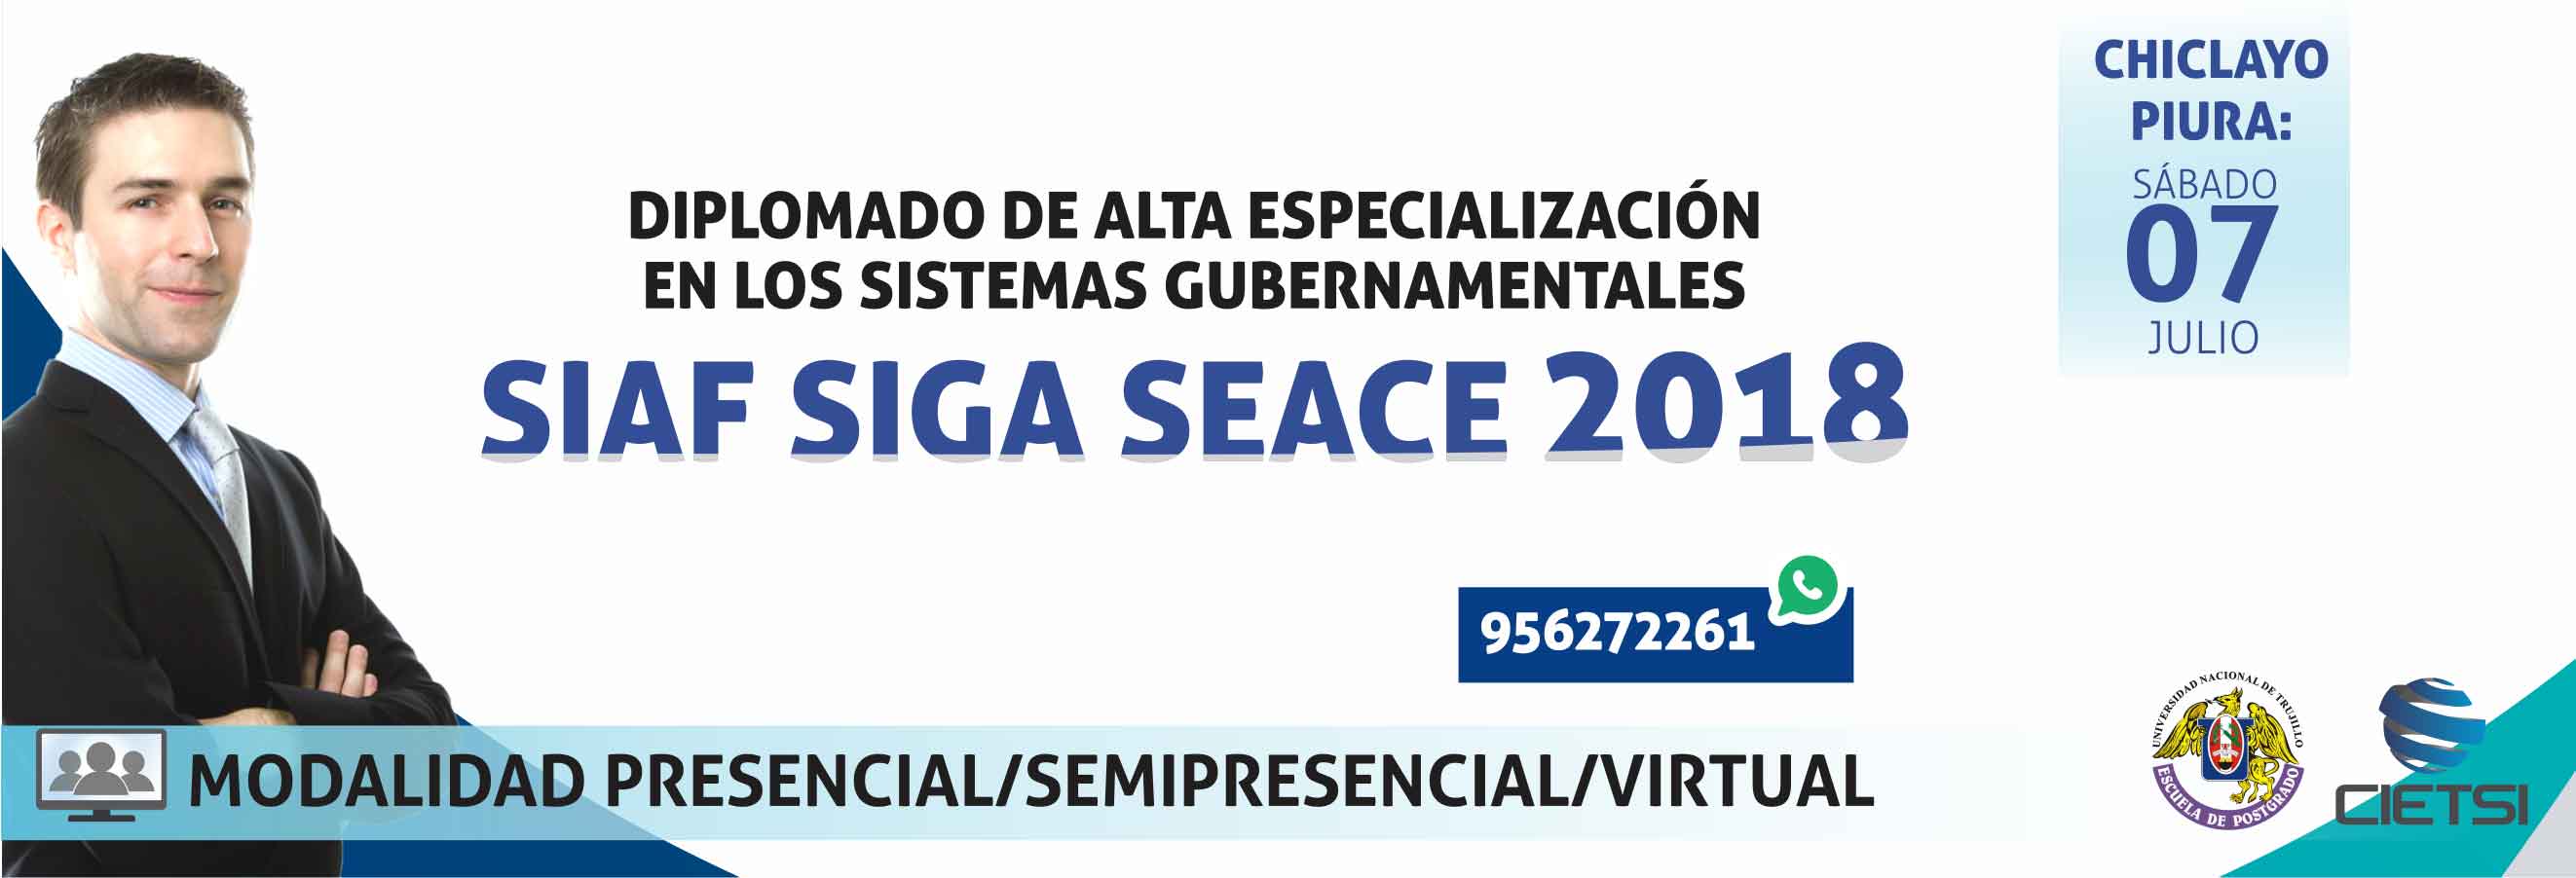 DIPLOMADO DE ALTA ESPECIALIZACIÓN EN LOS SISTEMAS GUBERNAMENTALES DE GESTIÓN PÚBLICA: SIAF SIGA SEACE 2018 - 3ERA EDICIÓN